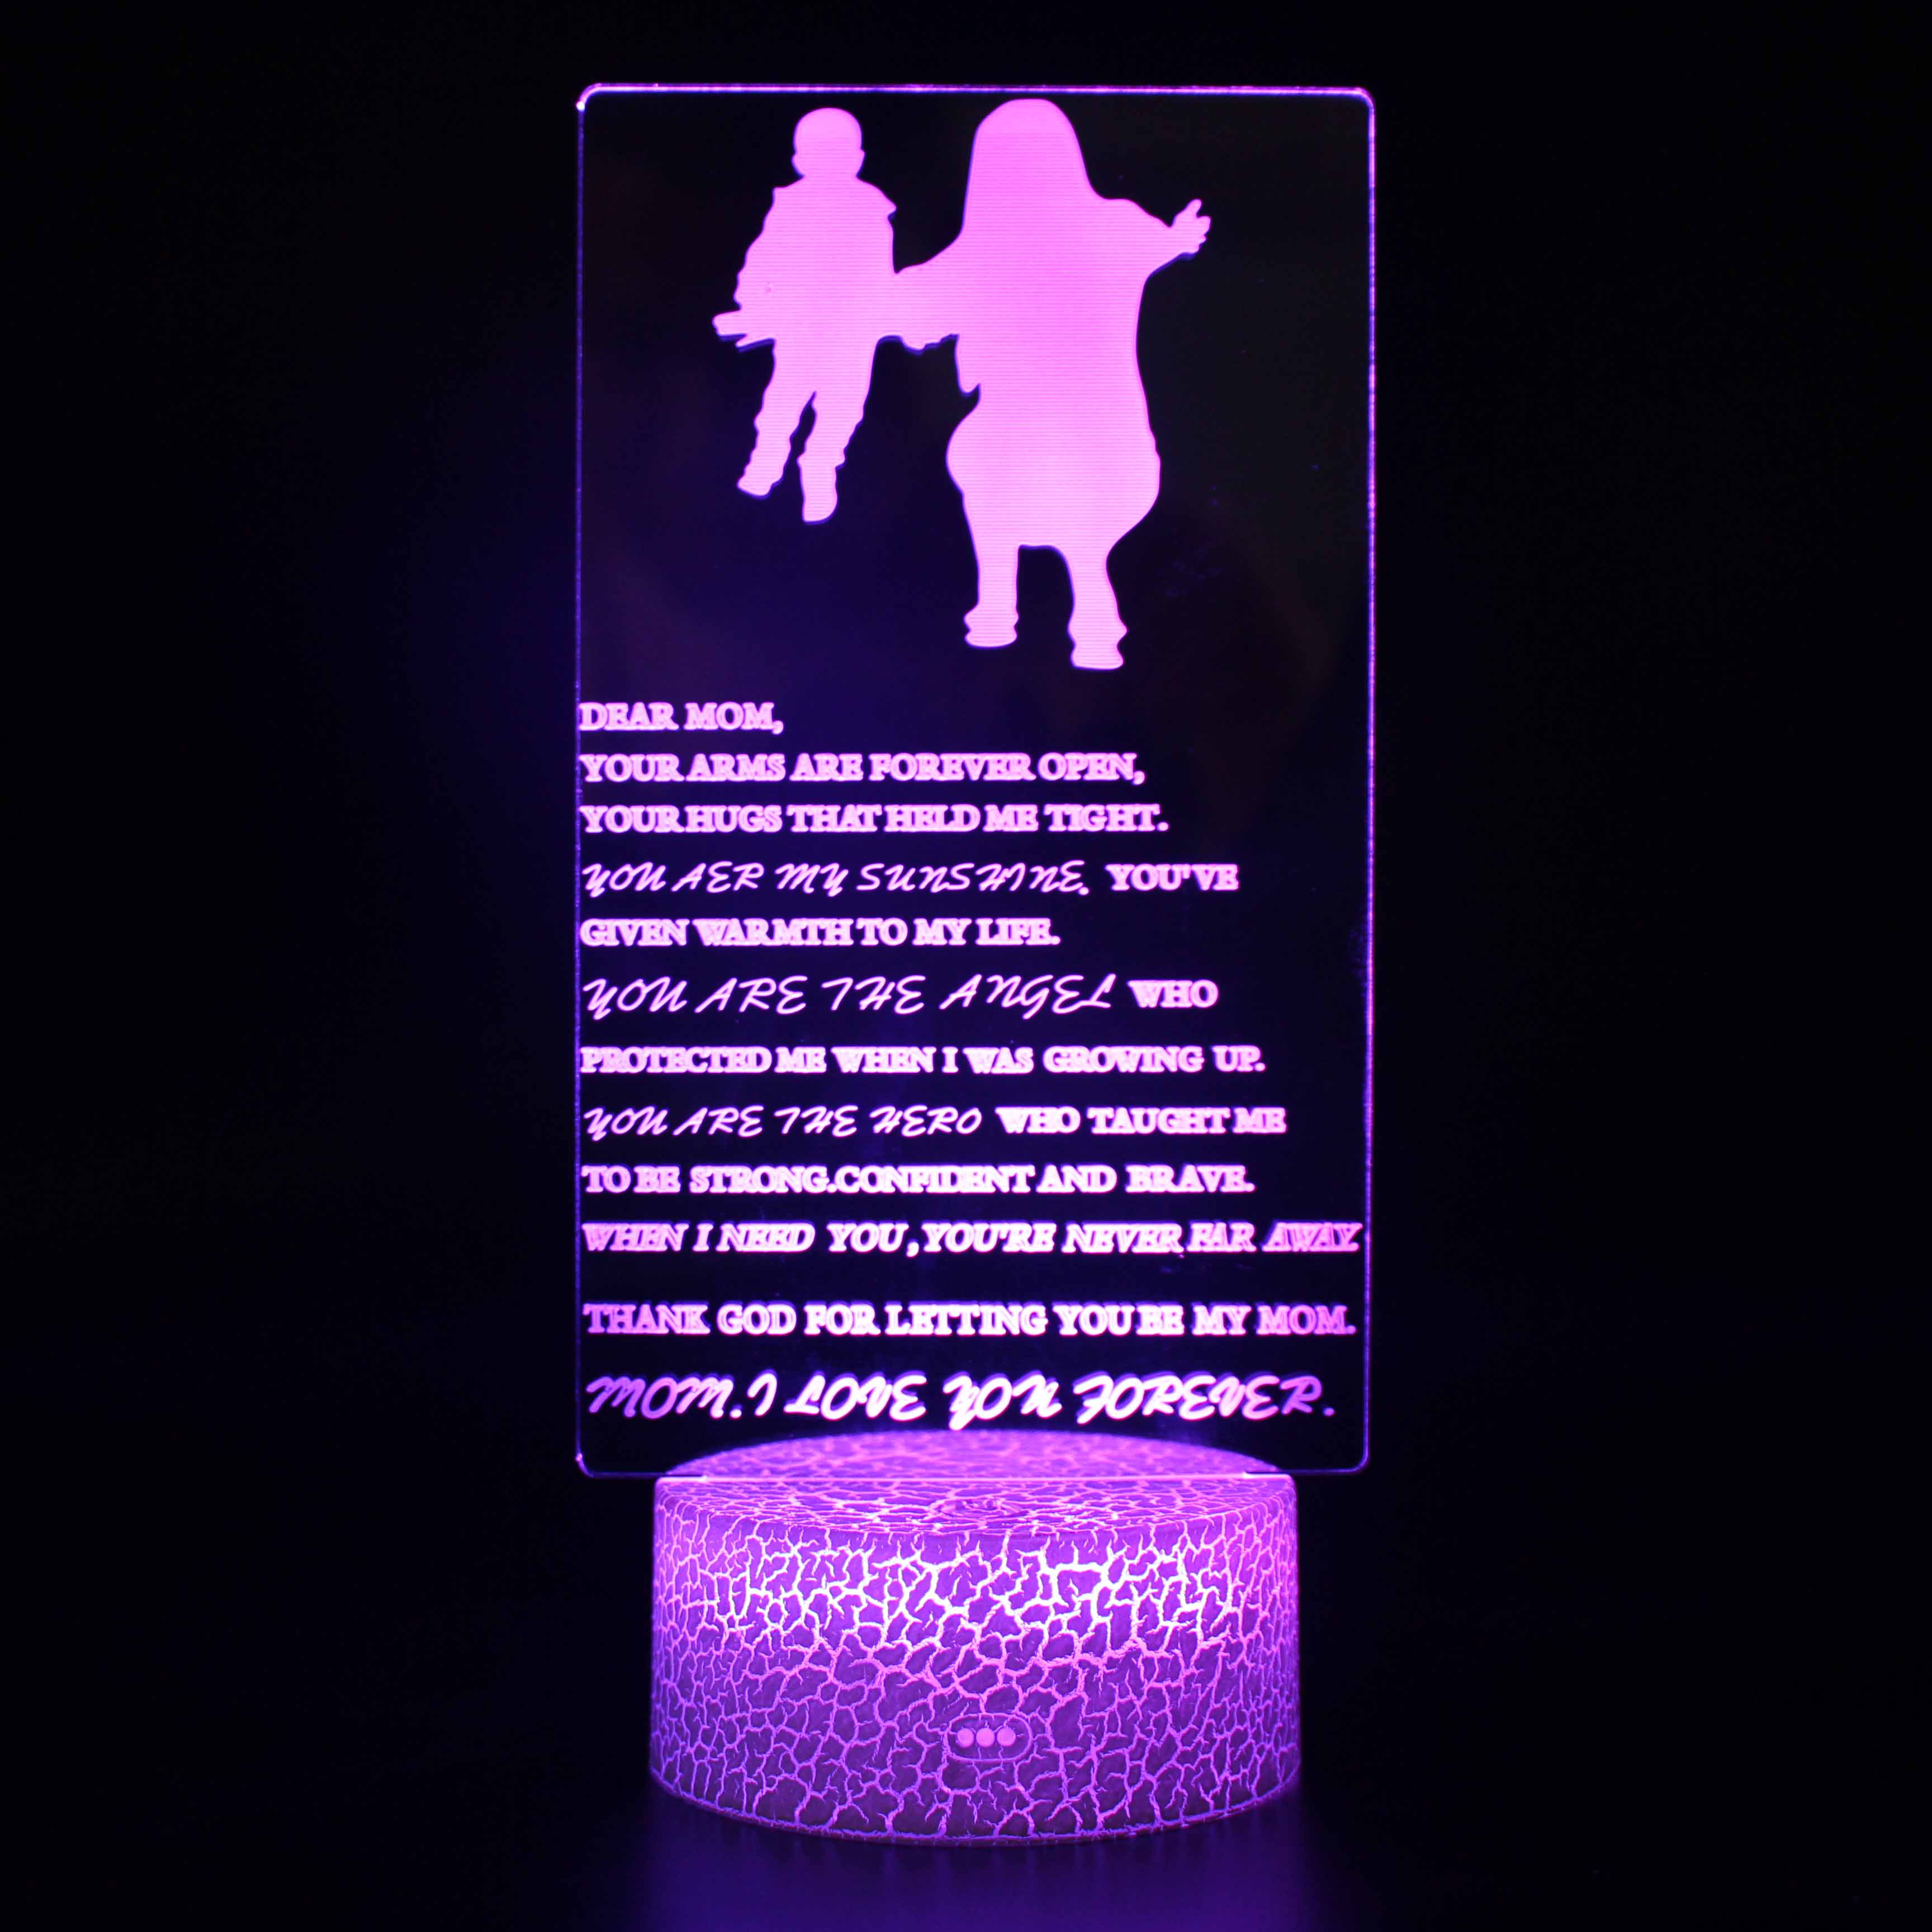 Lámpara de ilusión óptica 3D Control táctil Visualización de ilusión óptica Signo del día de la madre, lámpara de luz nocturna LED 7 colores que cambian Control táctil Luz nocturna Soporte de lámpara